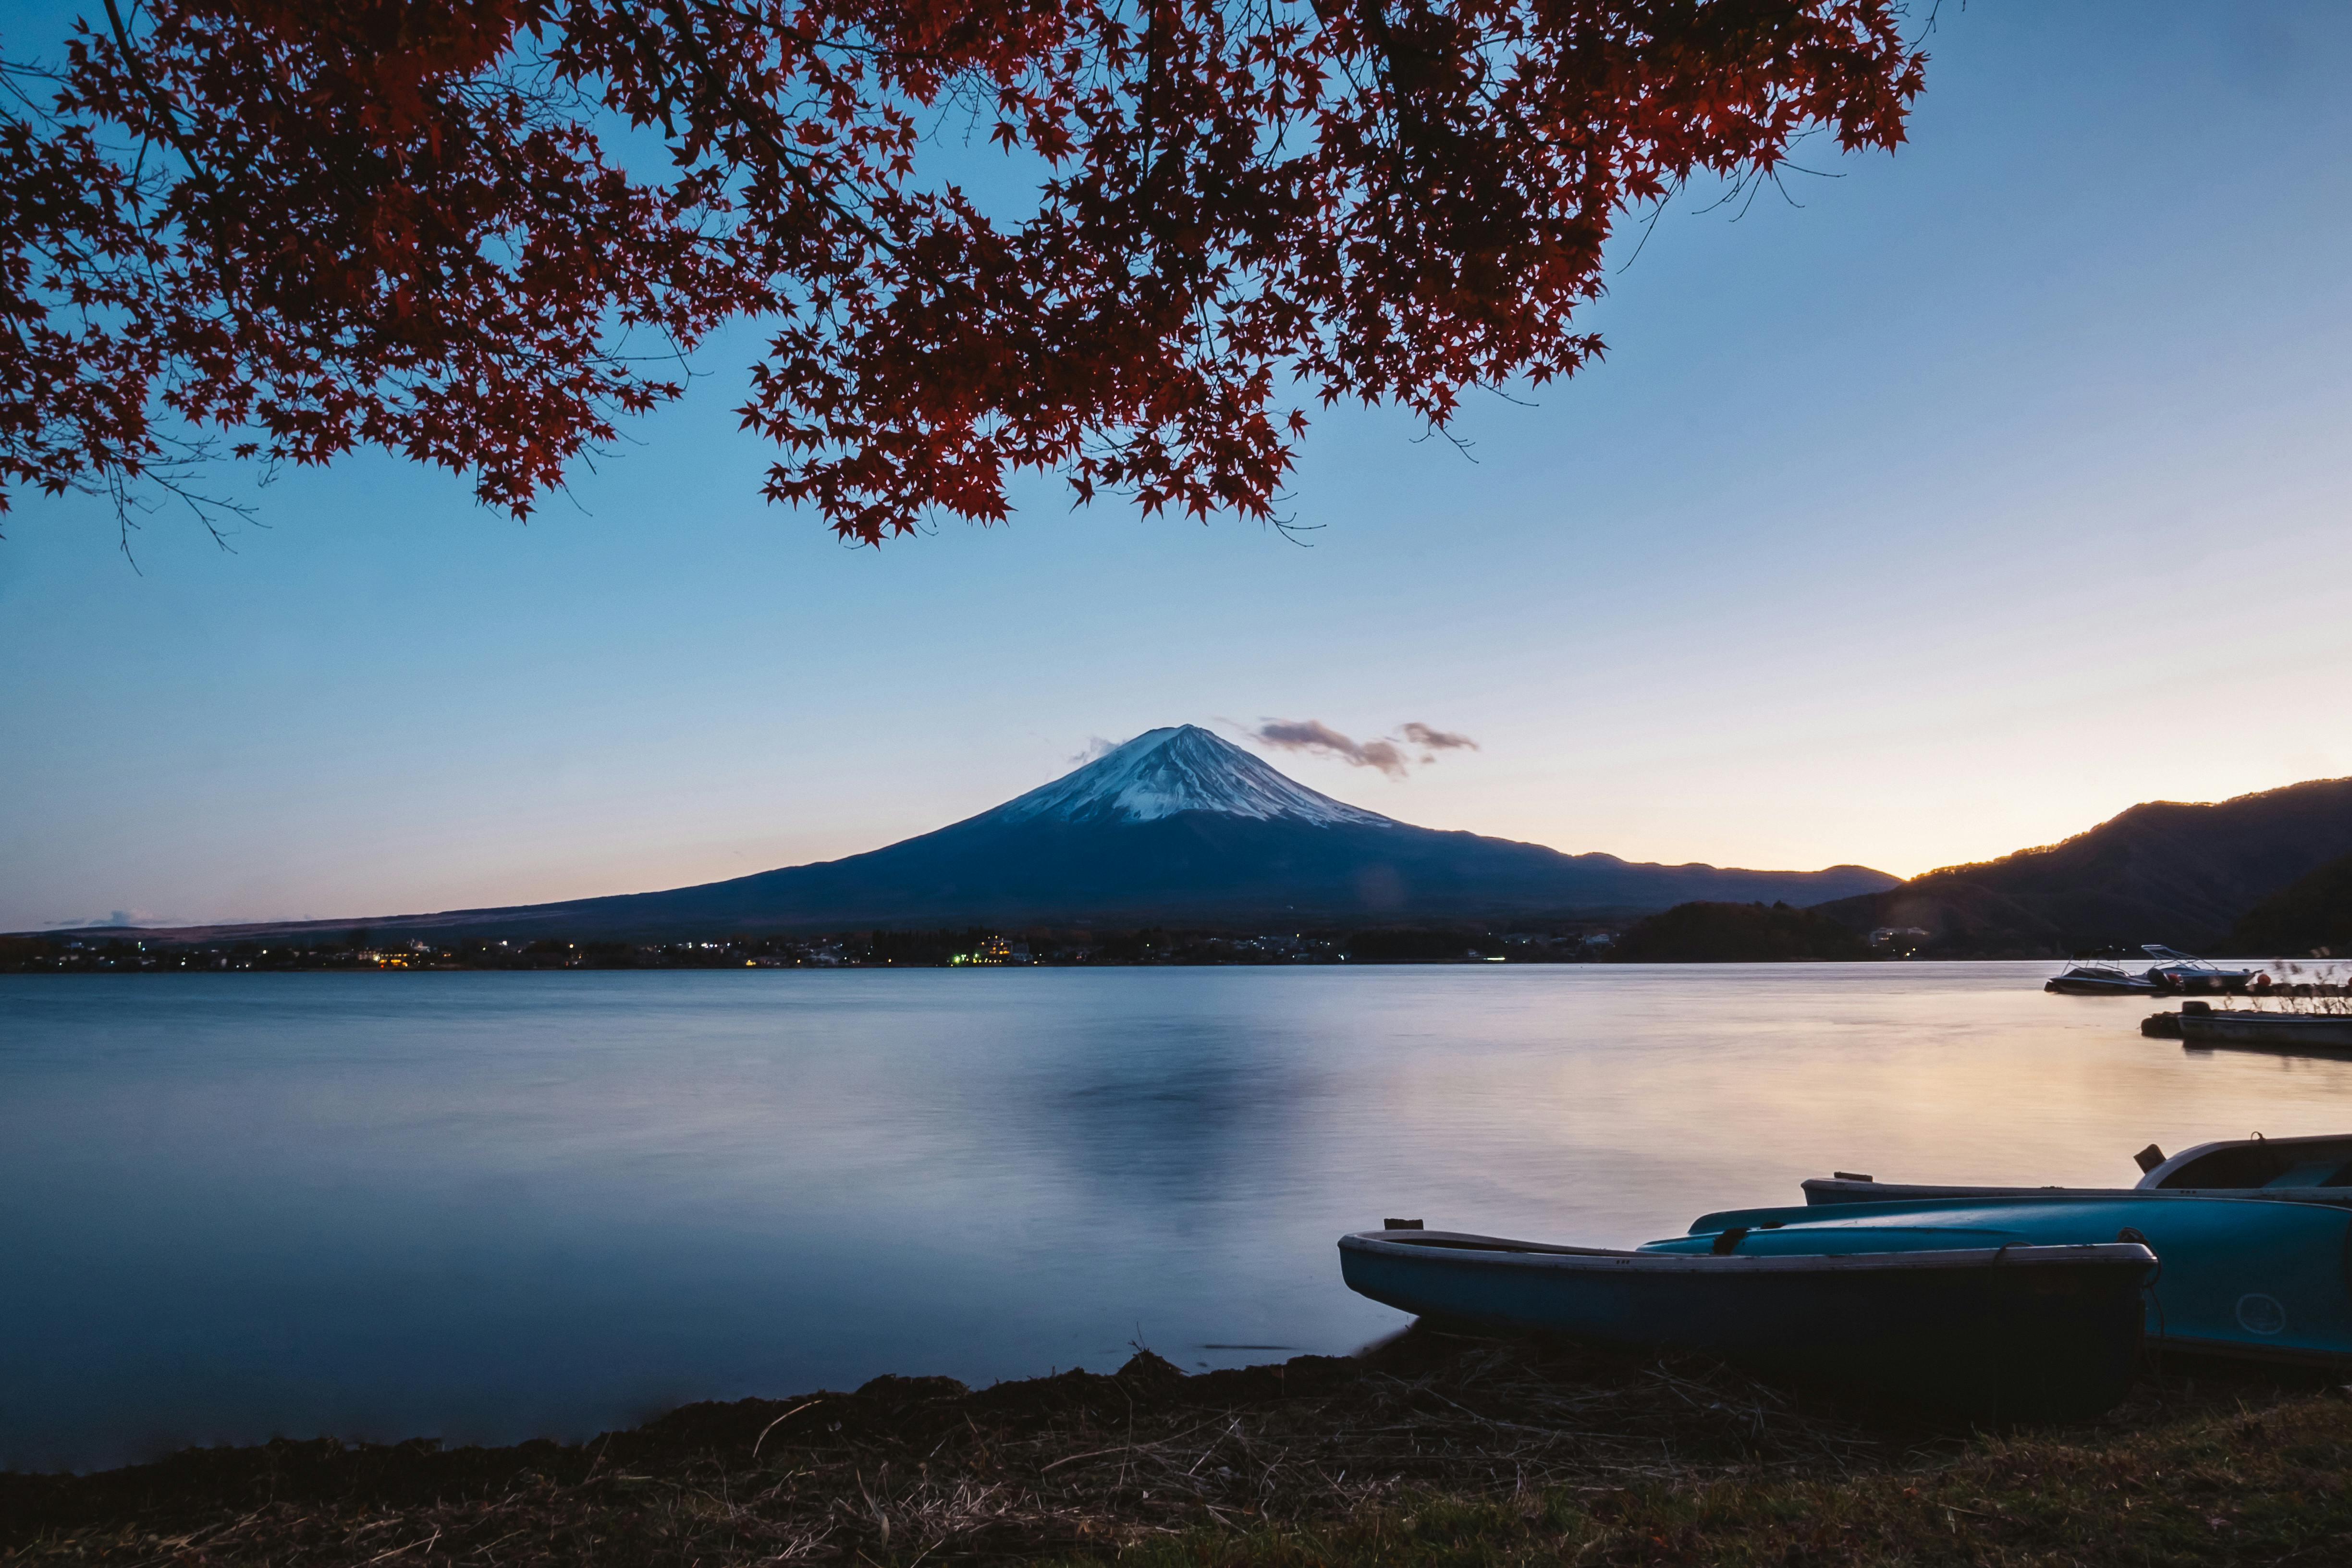 Núi Phú Sĩ được coi là biểu tượng của nước Nhật, với độ cao hơn 3.776 mét và là điểm đến yêu thích của người du lịch từ khắp nơi trên thế giới. Hình ảnh về núi Phú Sĩ sẽ khiến bạn nhớ mãi đến danh lam thắng cảnh này.